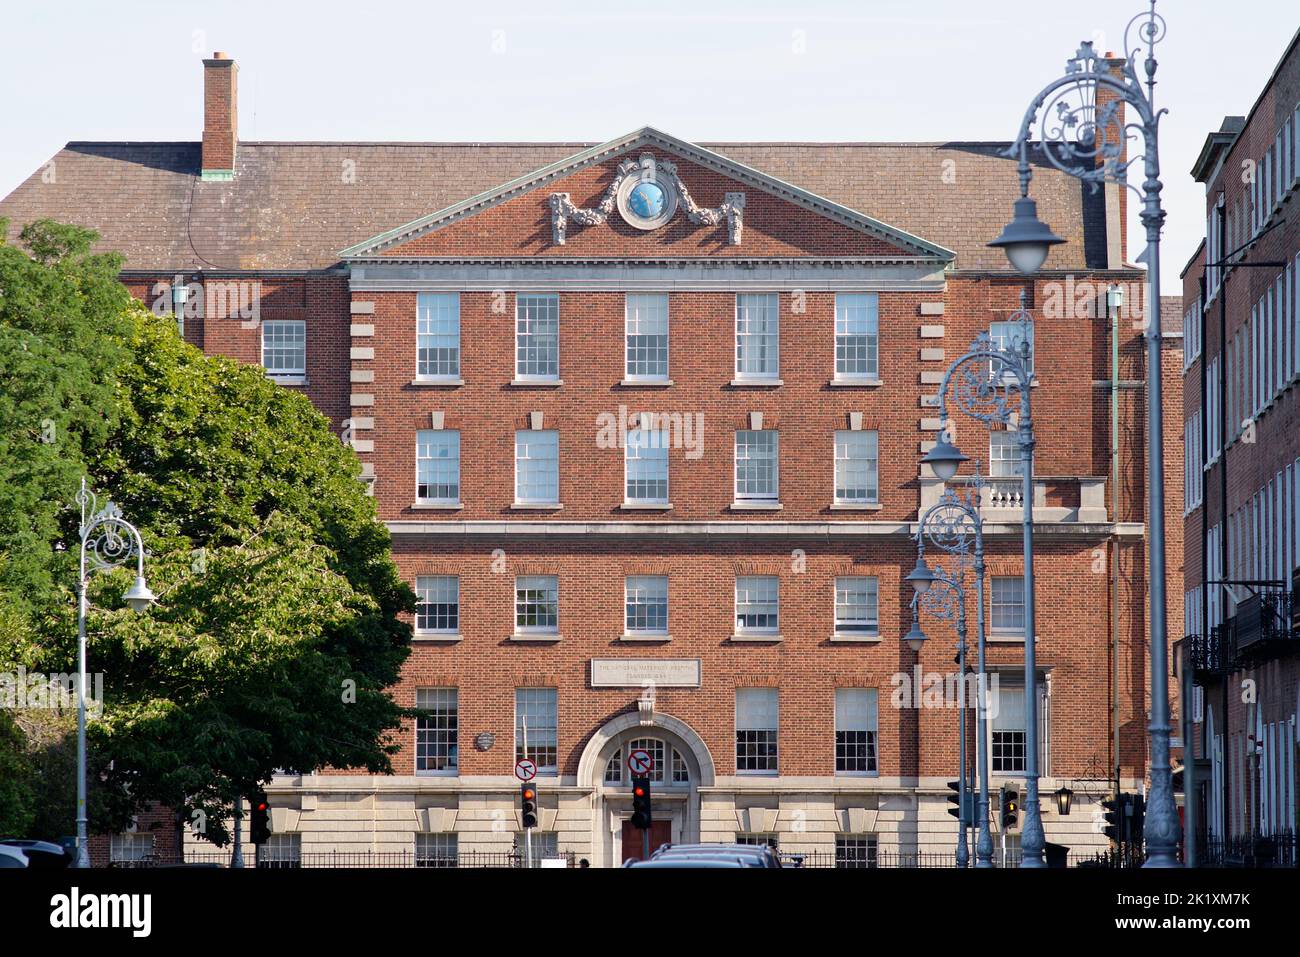 L'hôpital national de maternité d'Irlande à Dublin, dont la devise est vie glorieuse vie. Situé dans Holles Street, Dublin 2. Banque D'Images